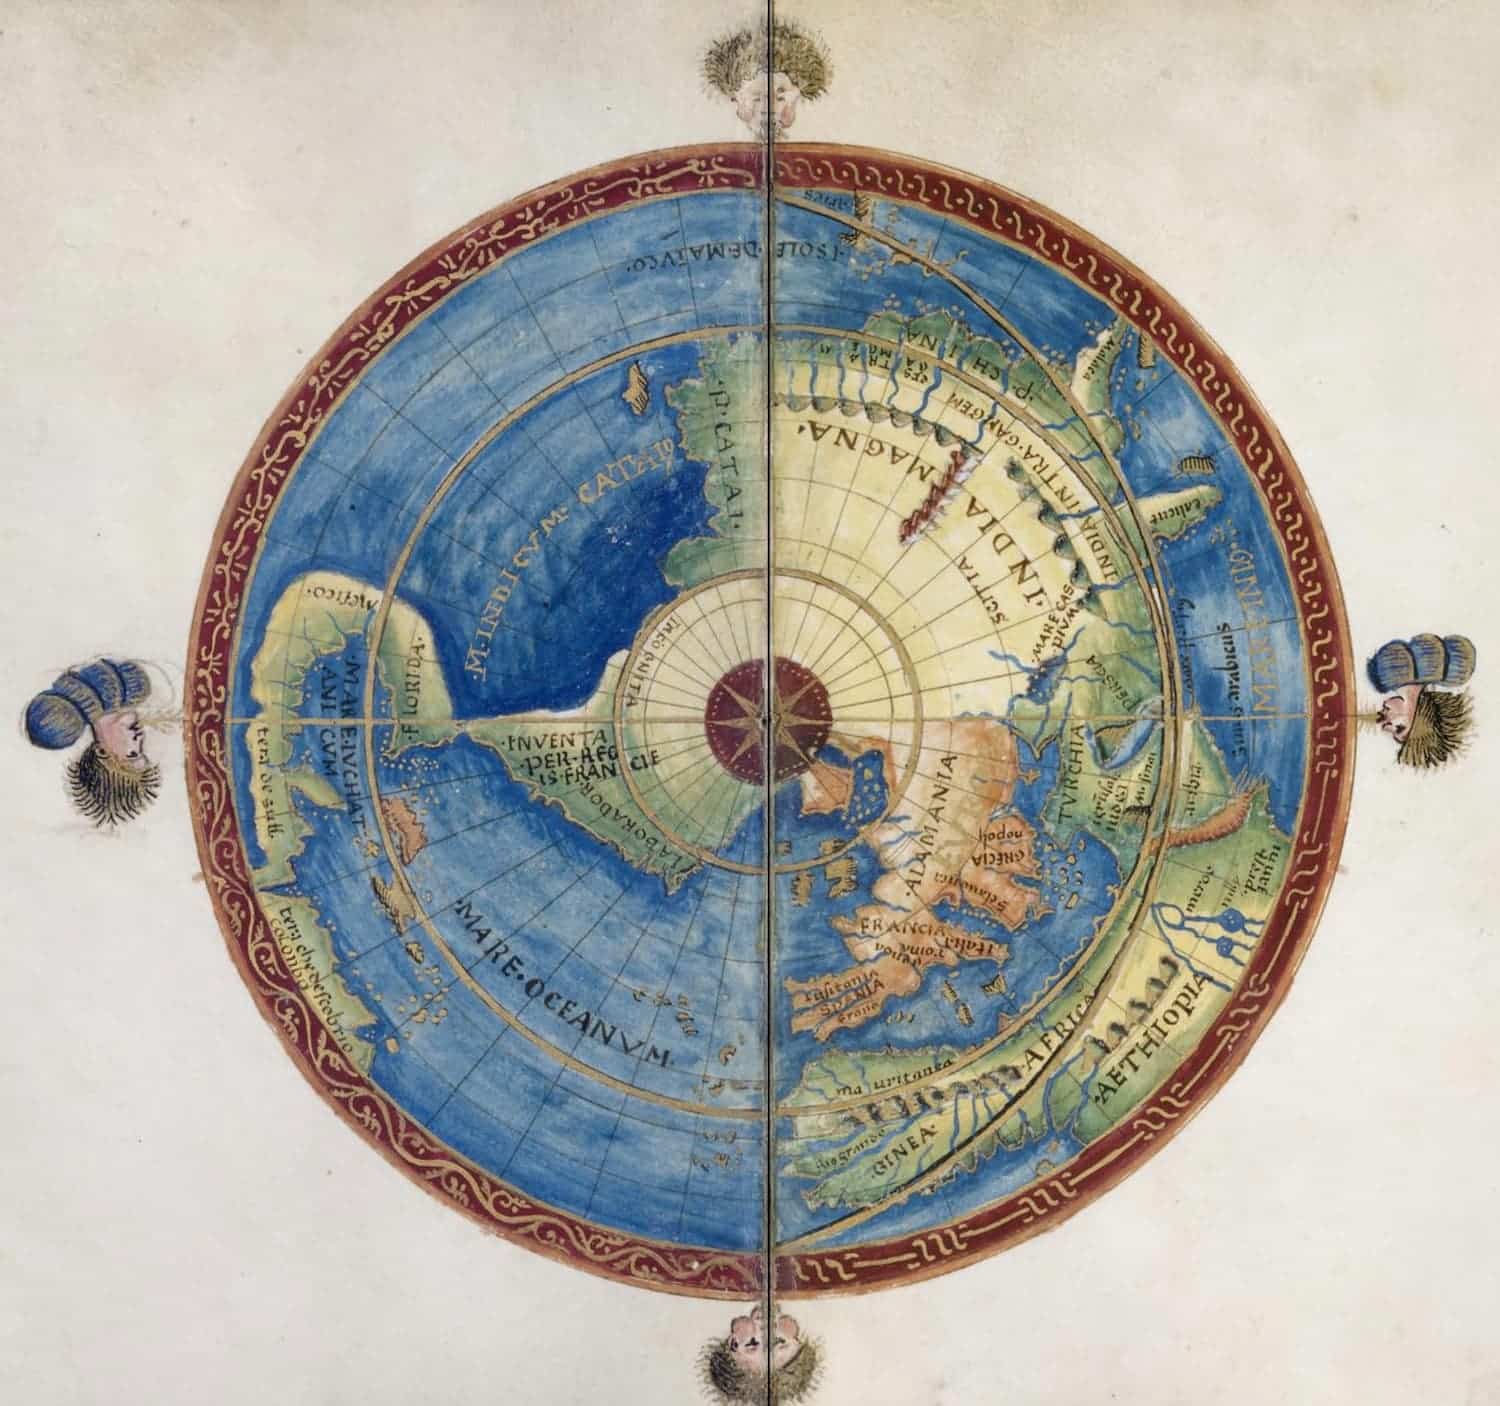 Atlas of Battista Agnese, Venice, 1544, Biblioteca Nacional de España